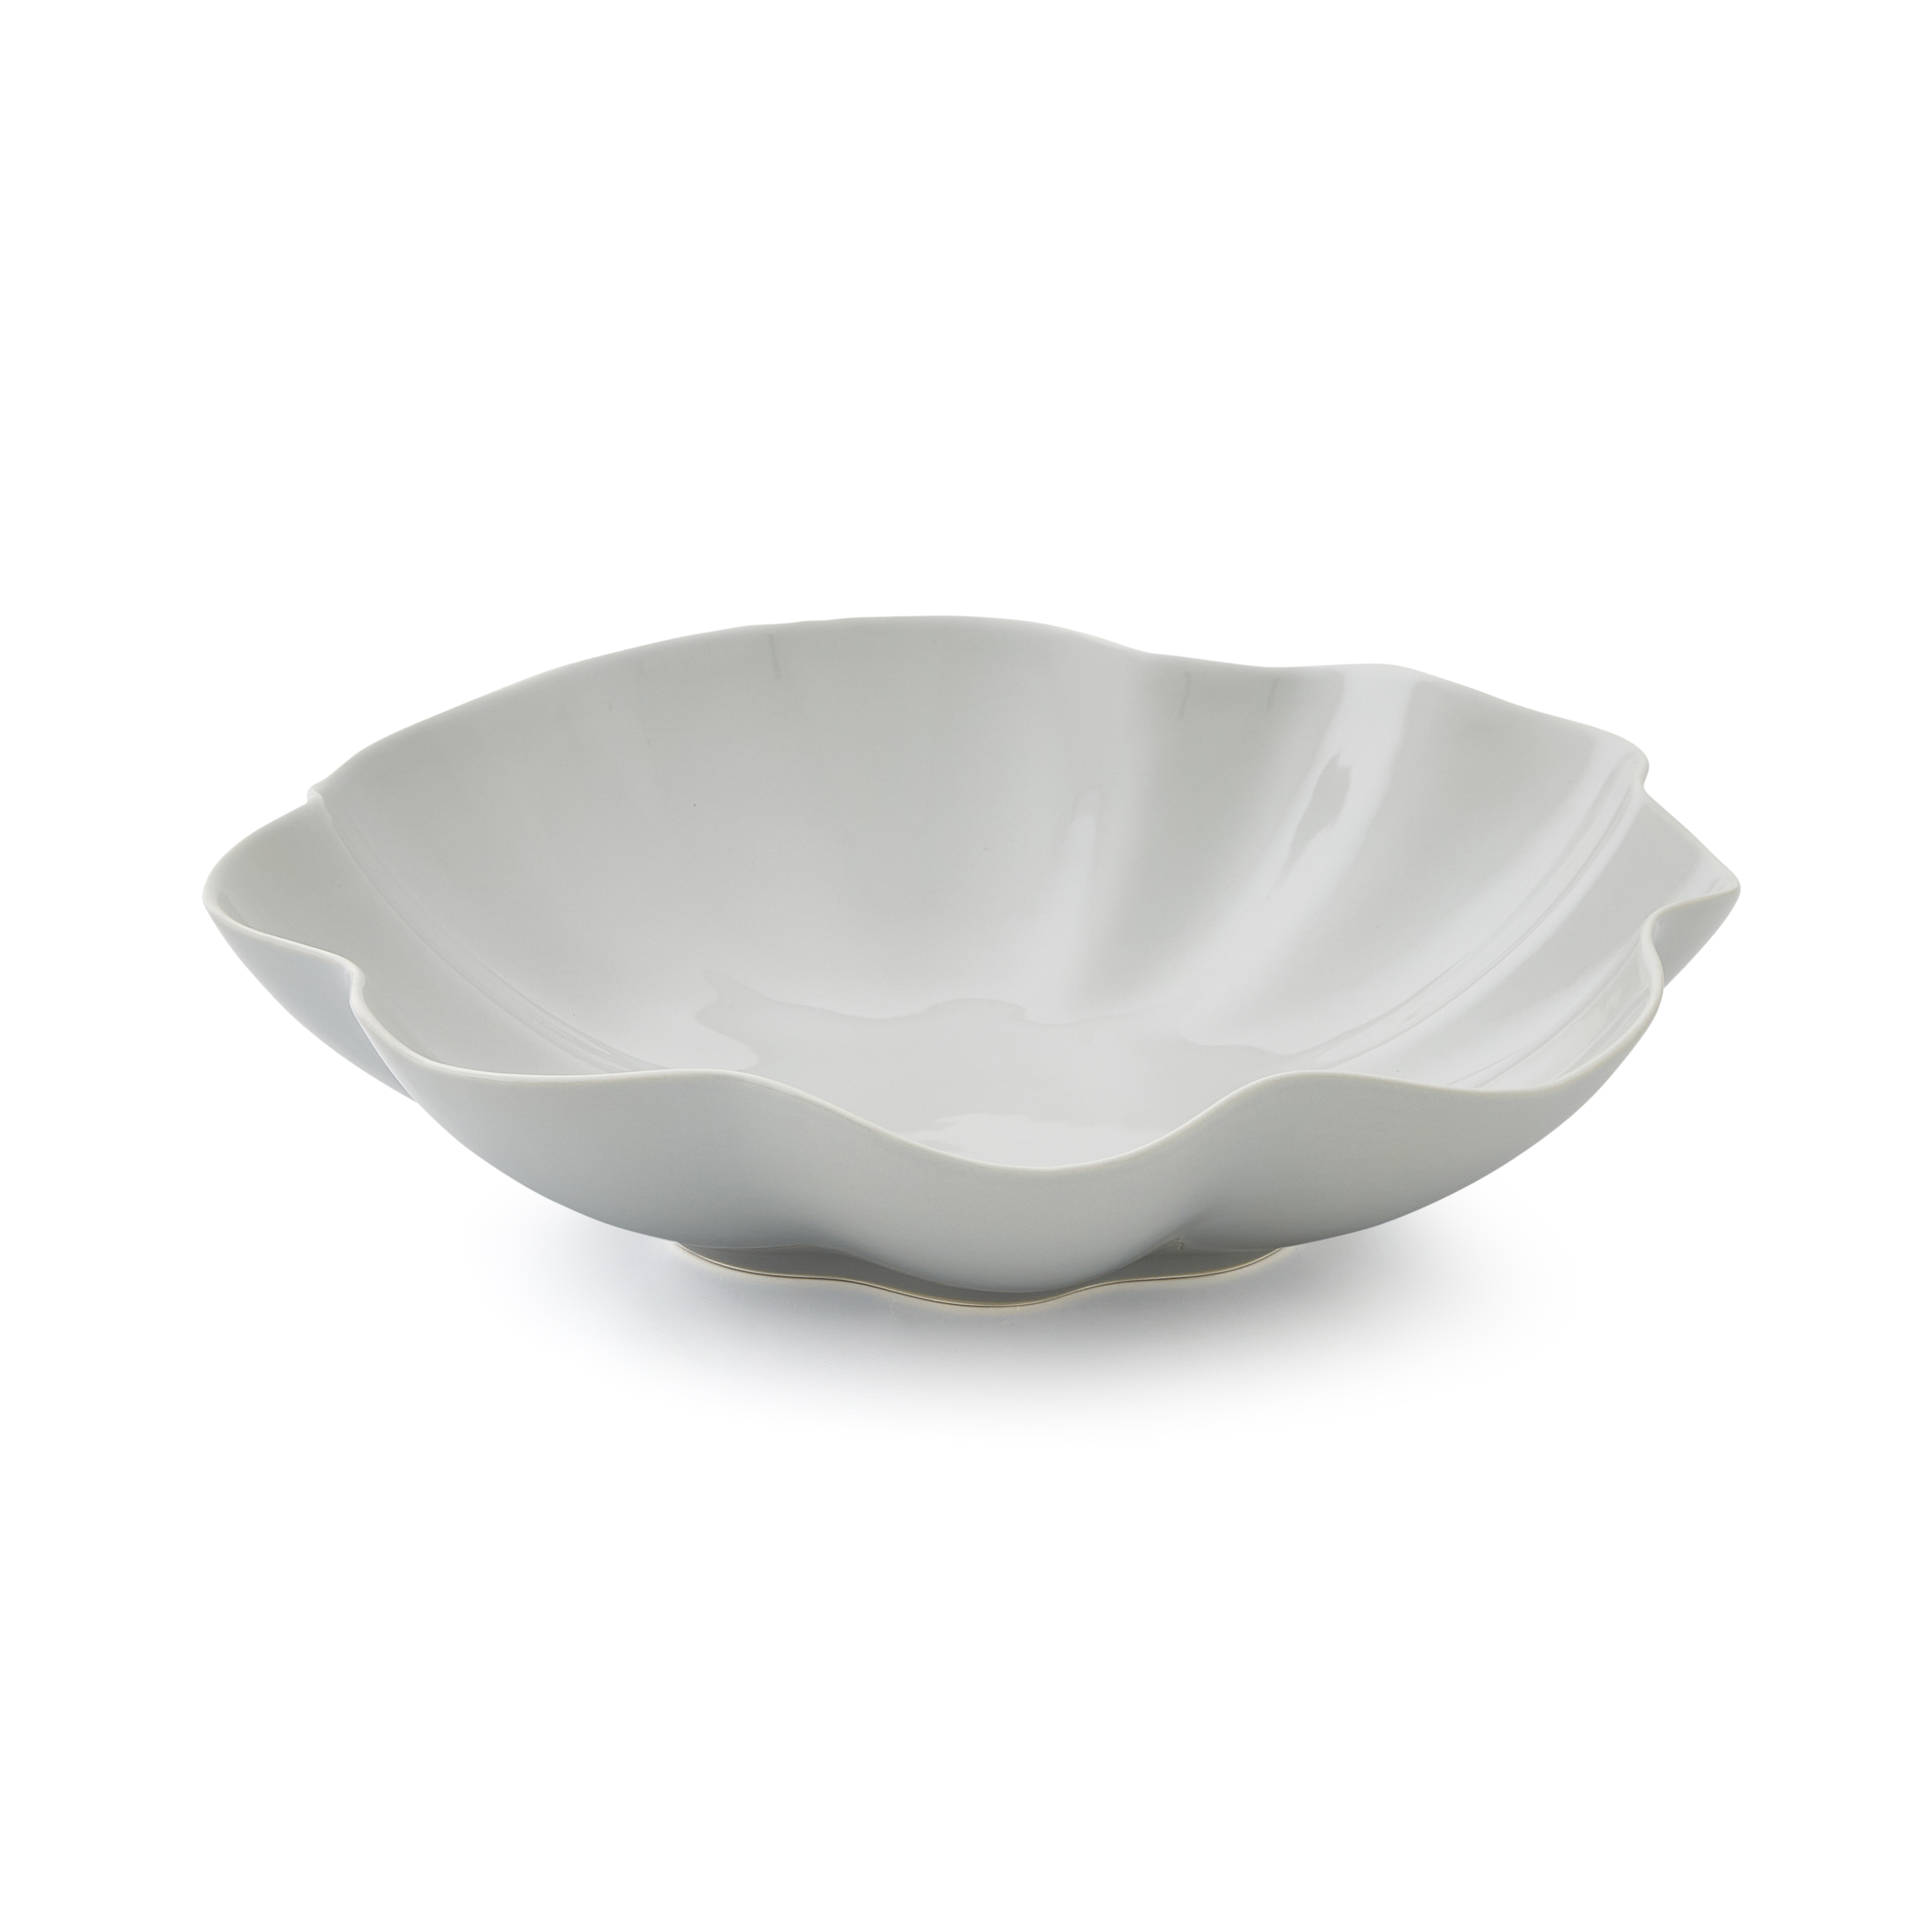 Sophie Conran Floret Large Serving Bowl, Grey image number null